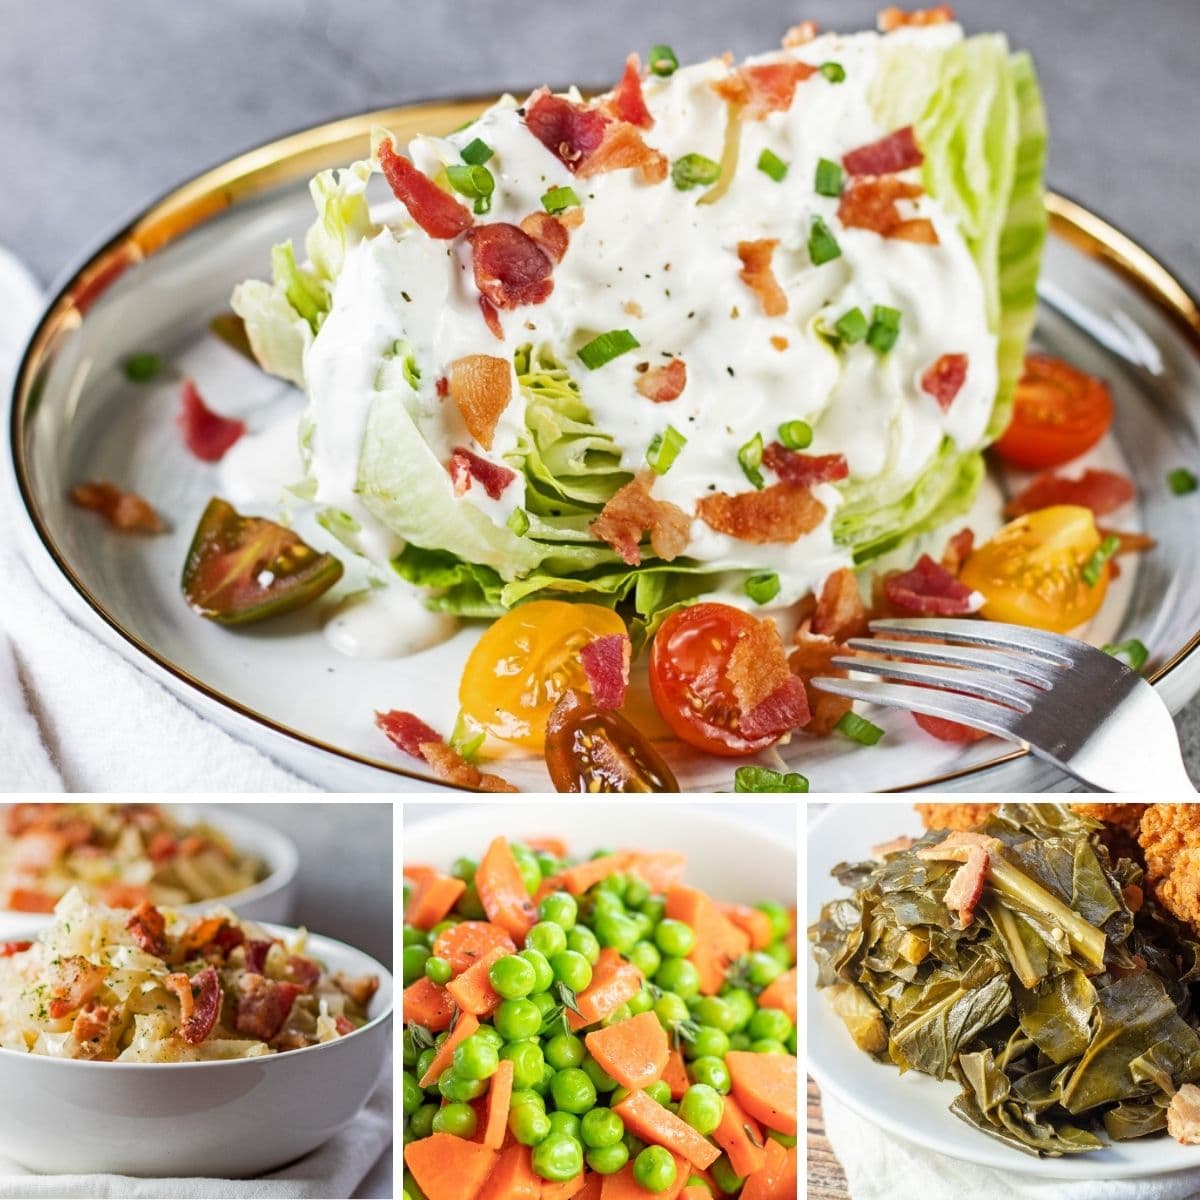 Beste plantaardige bijgerechten om bij elke maaltijd te serveren, zoals weergegeven met deze 4 aanbevolen recepten in een collage-afbeelding.